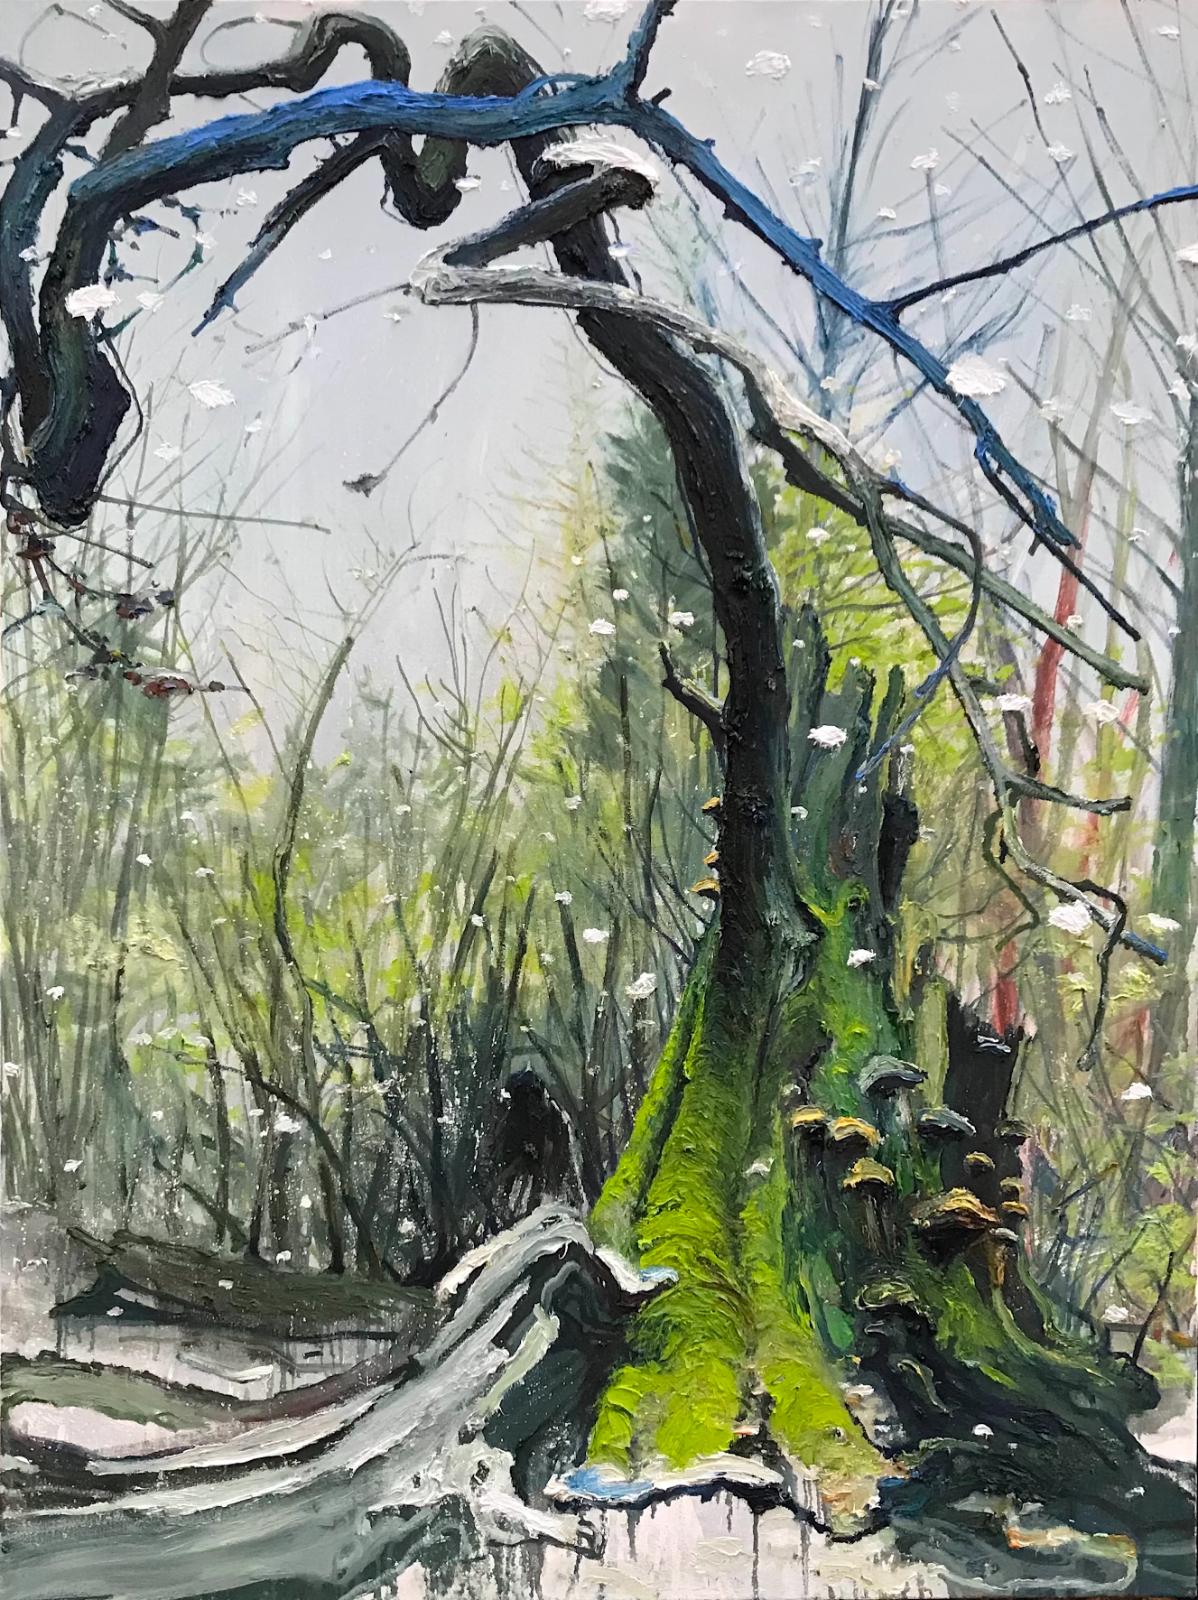 Helge Hommes, DU Baumporträt im Reinhardswald, plein air 2019, Öl auf Leinwand, 160 x 120 cm